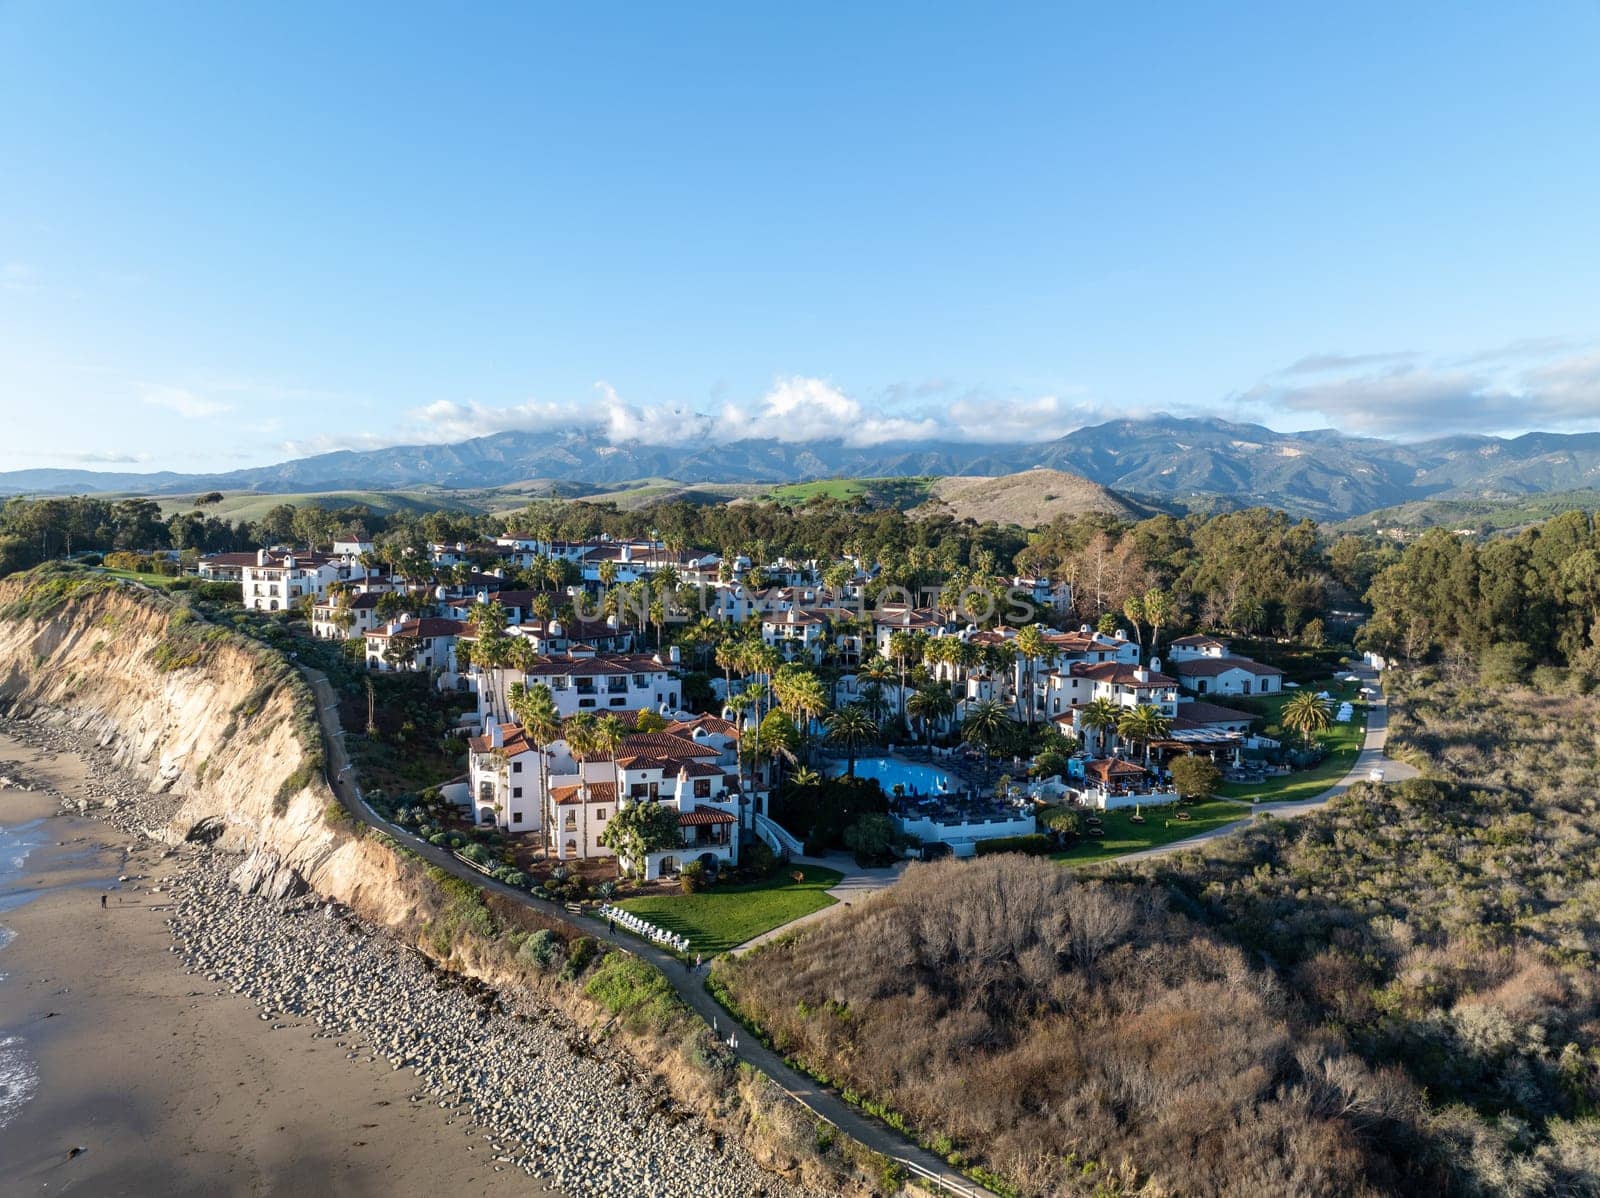 Aerial view of the shore in Santa Barbara California, USA by Bonandbon